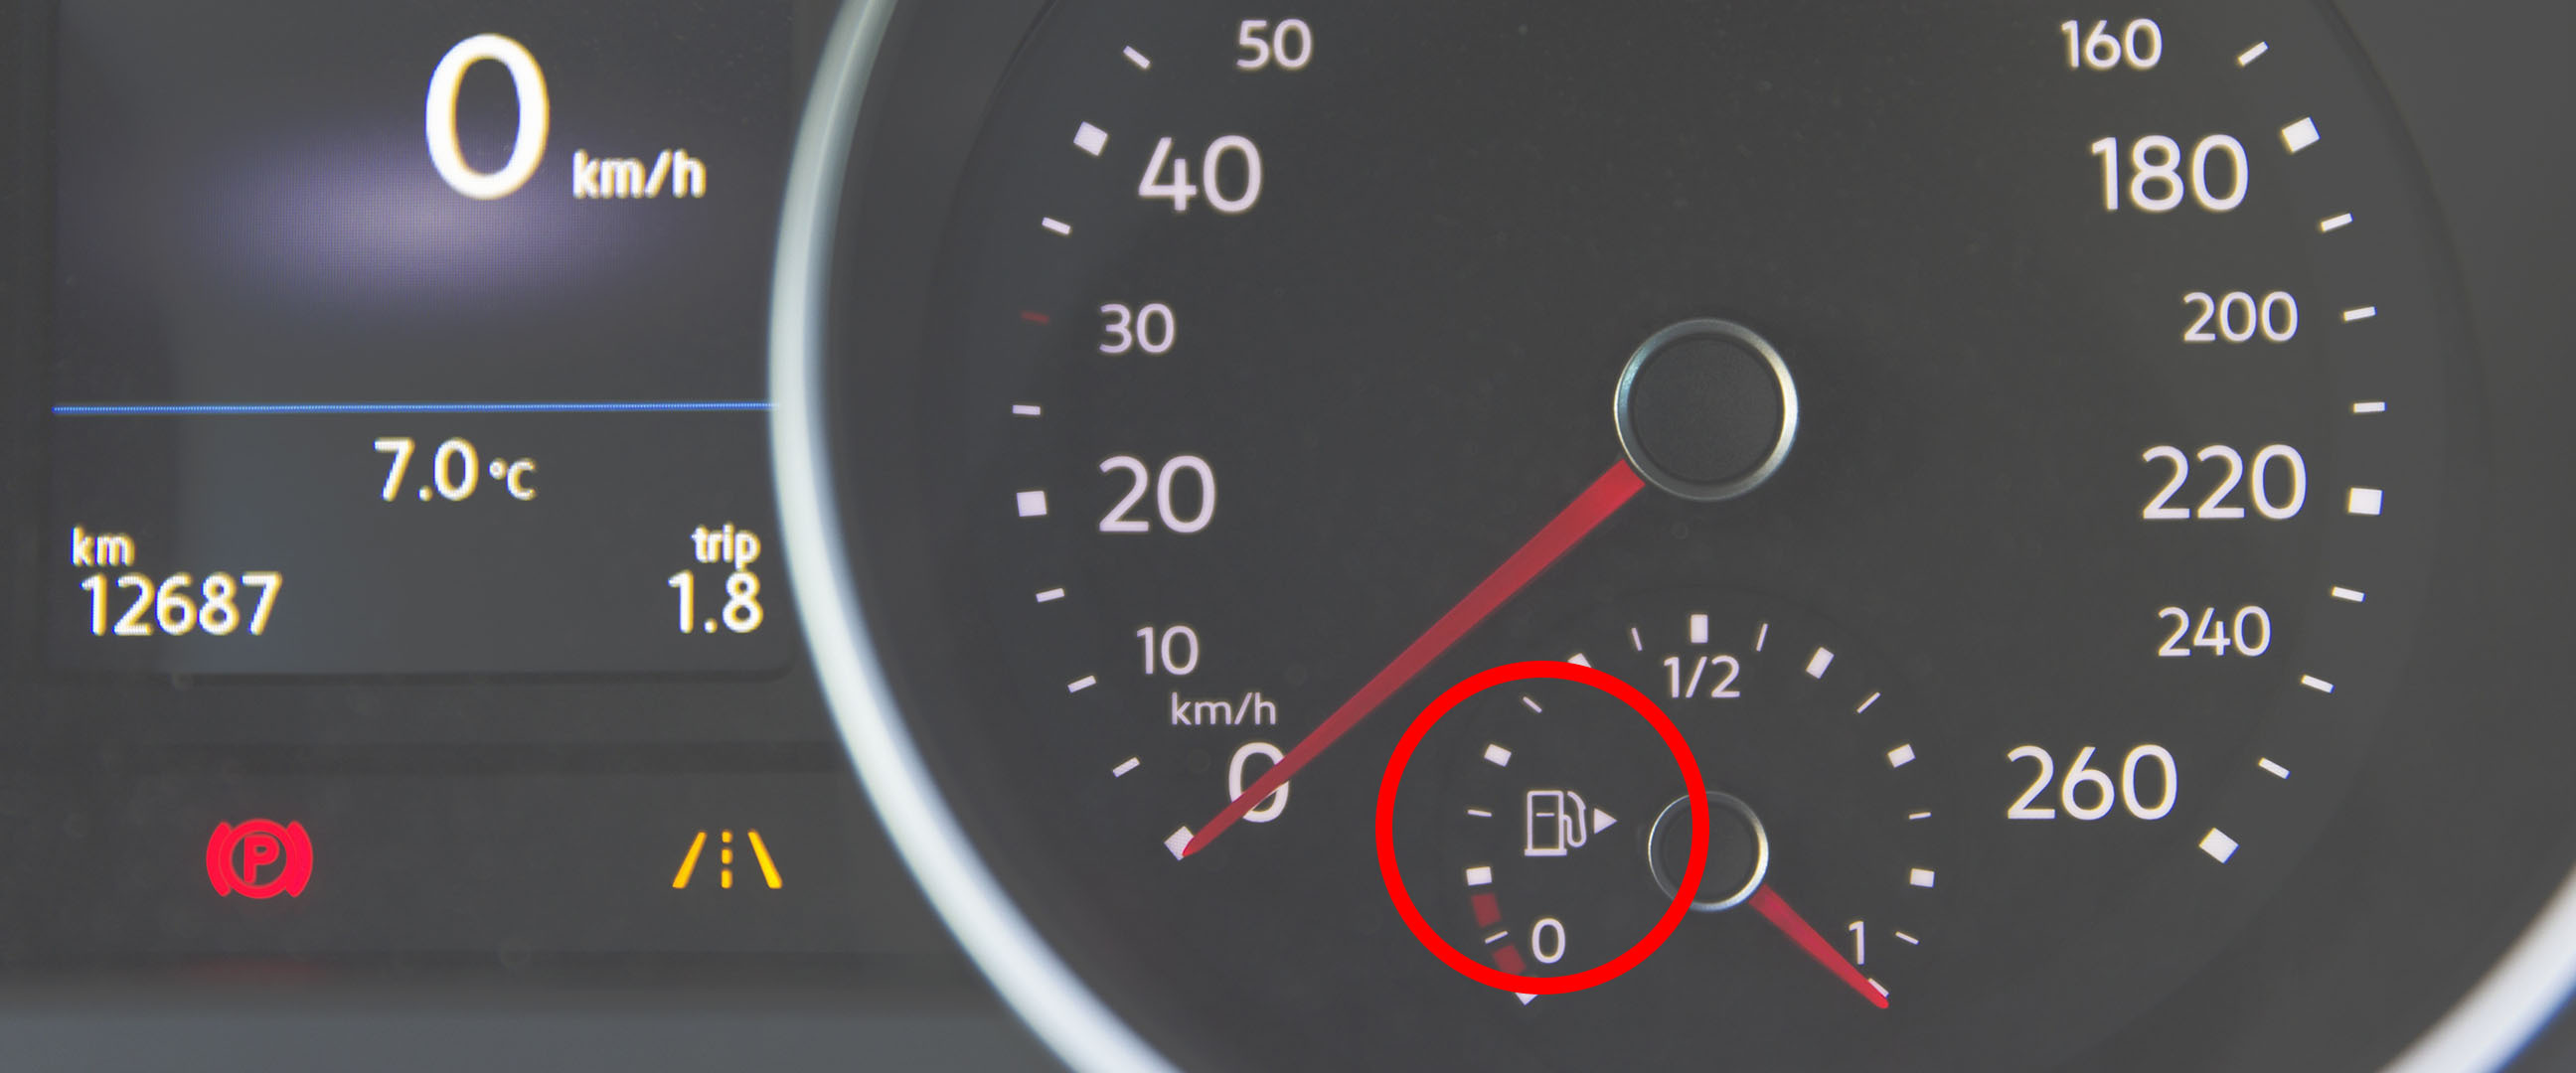 Närbild på symbolen för bränslemätaren i en bil